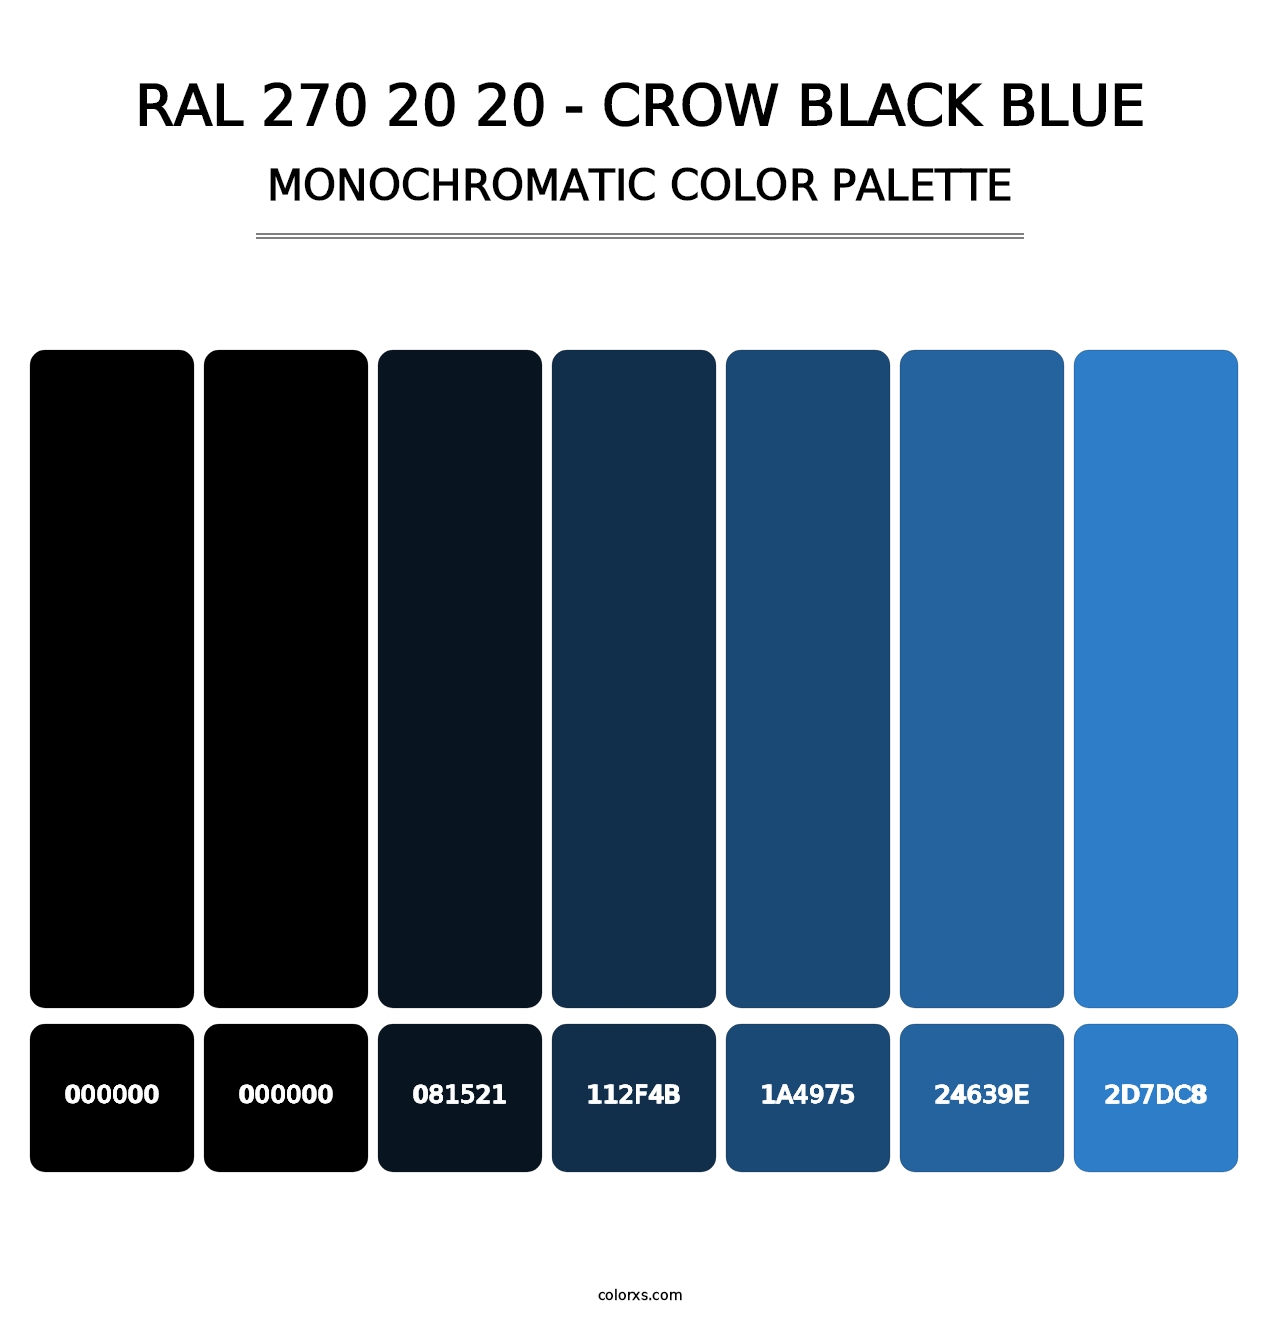 RAL 270 20 20 - Crow Black Blue - Monochromatic Color Palette